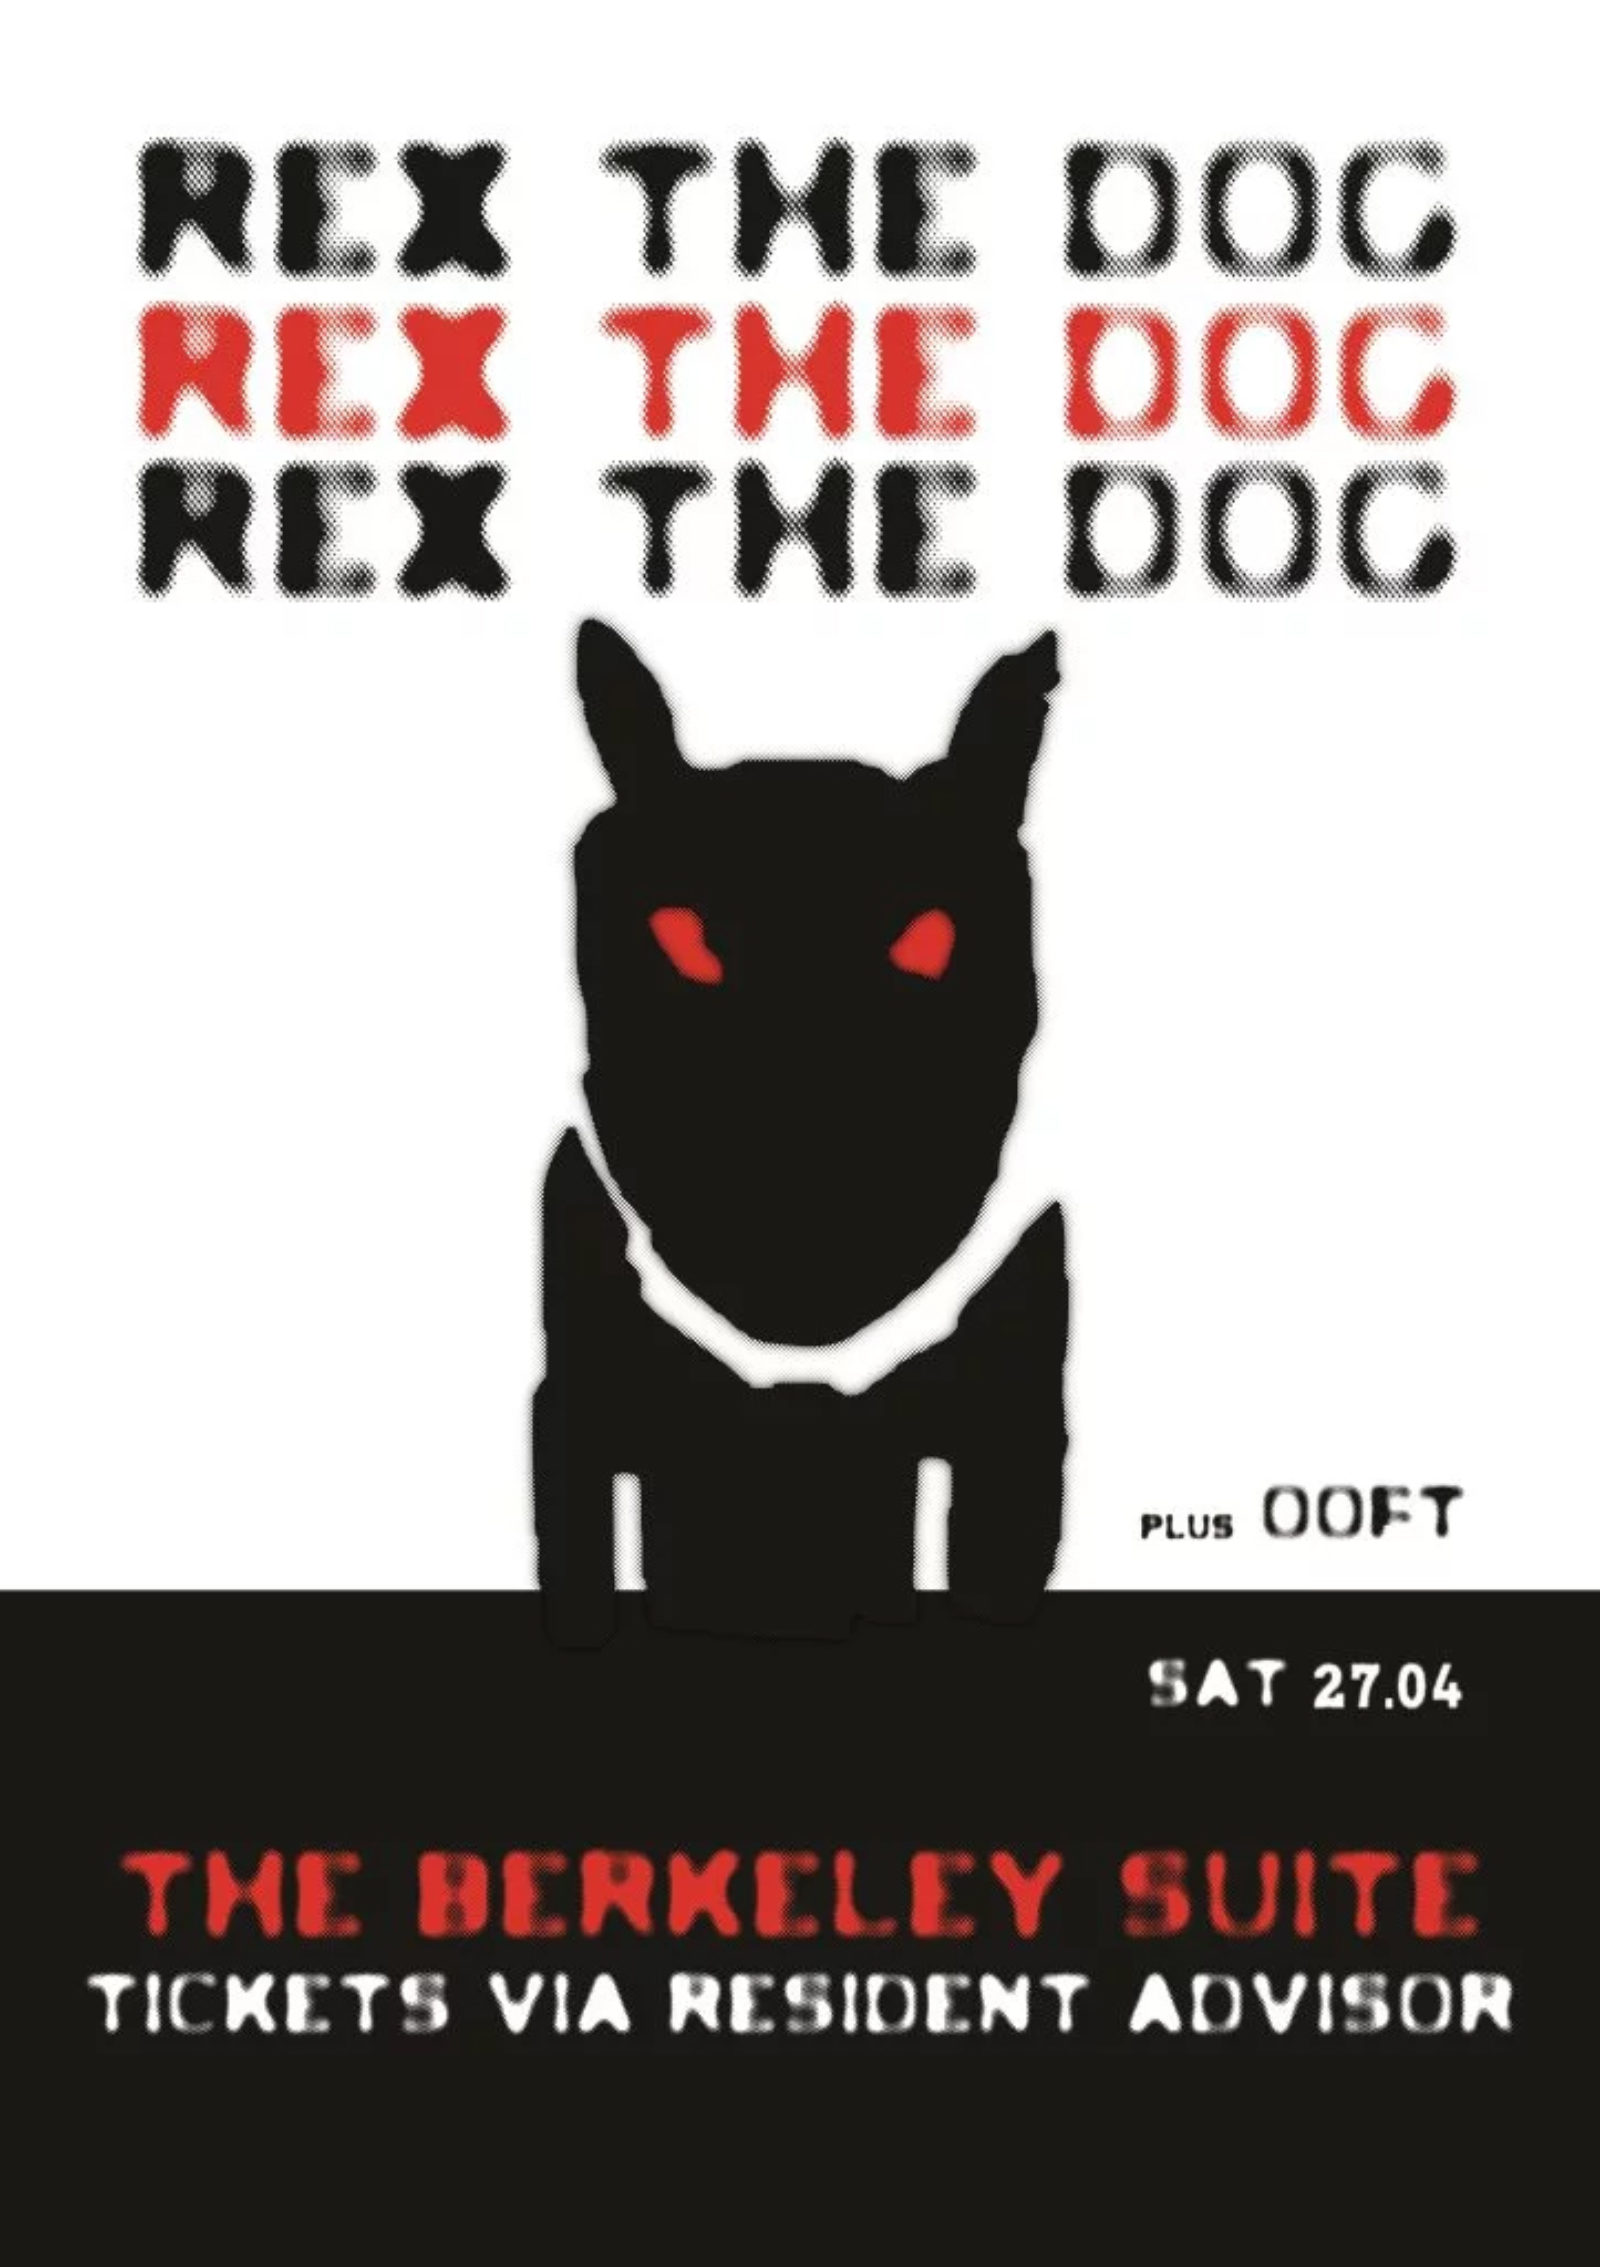 REX THE DOG (live modular set)!!